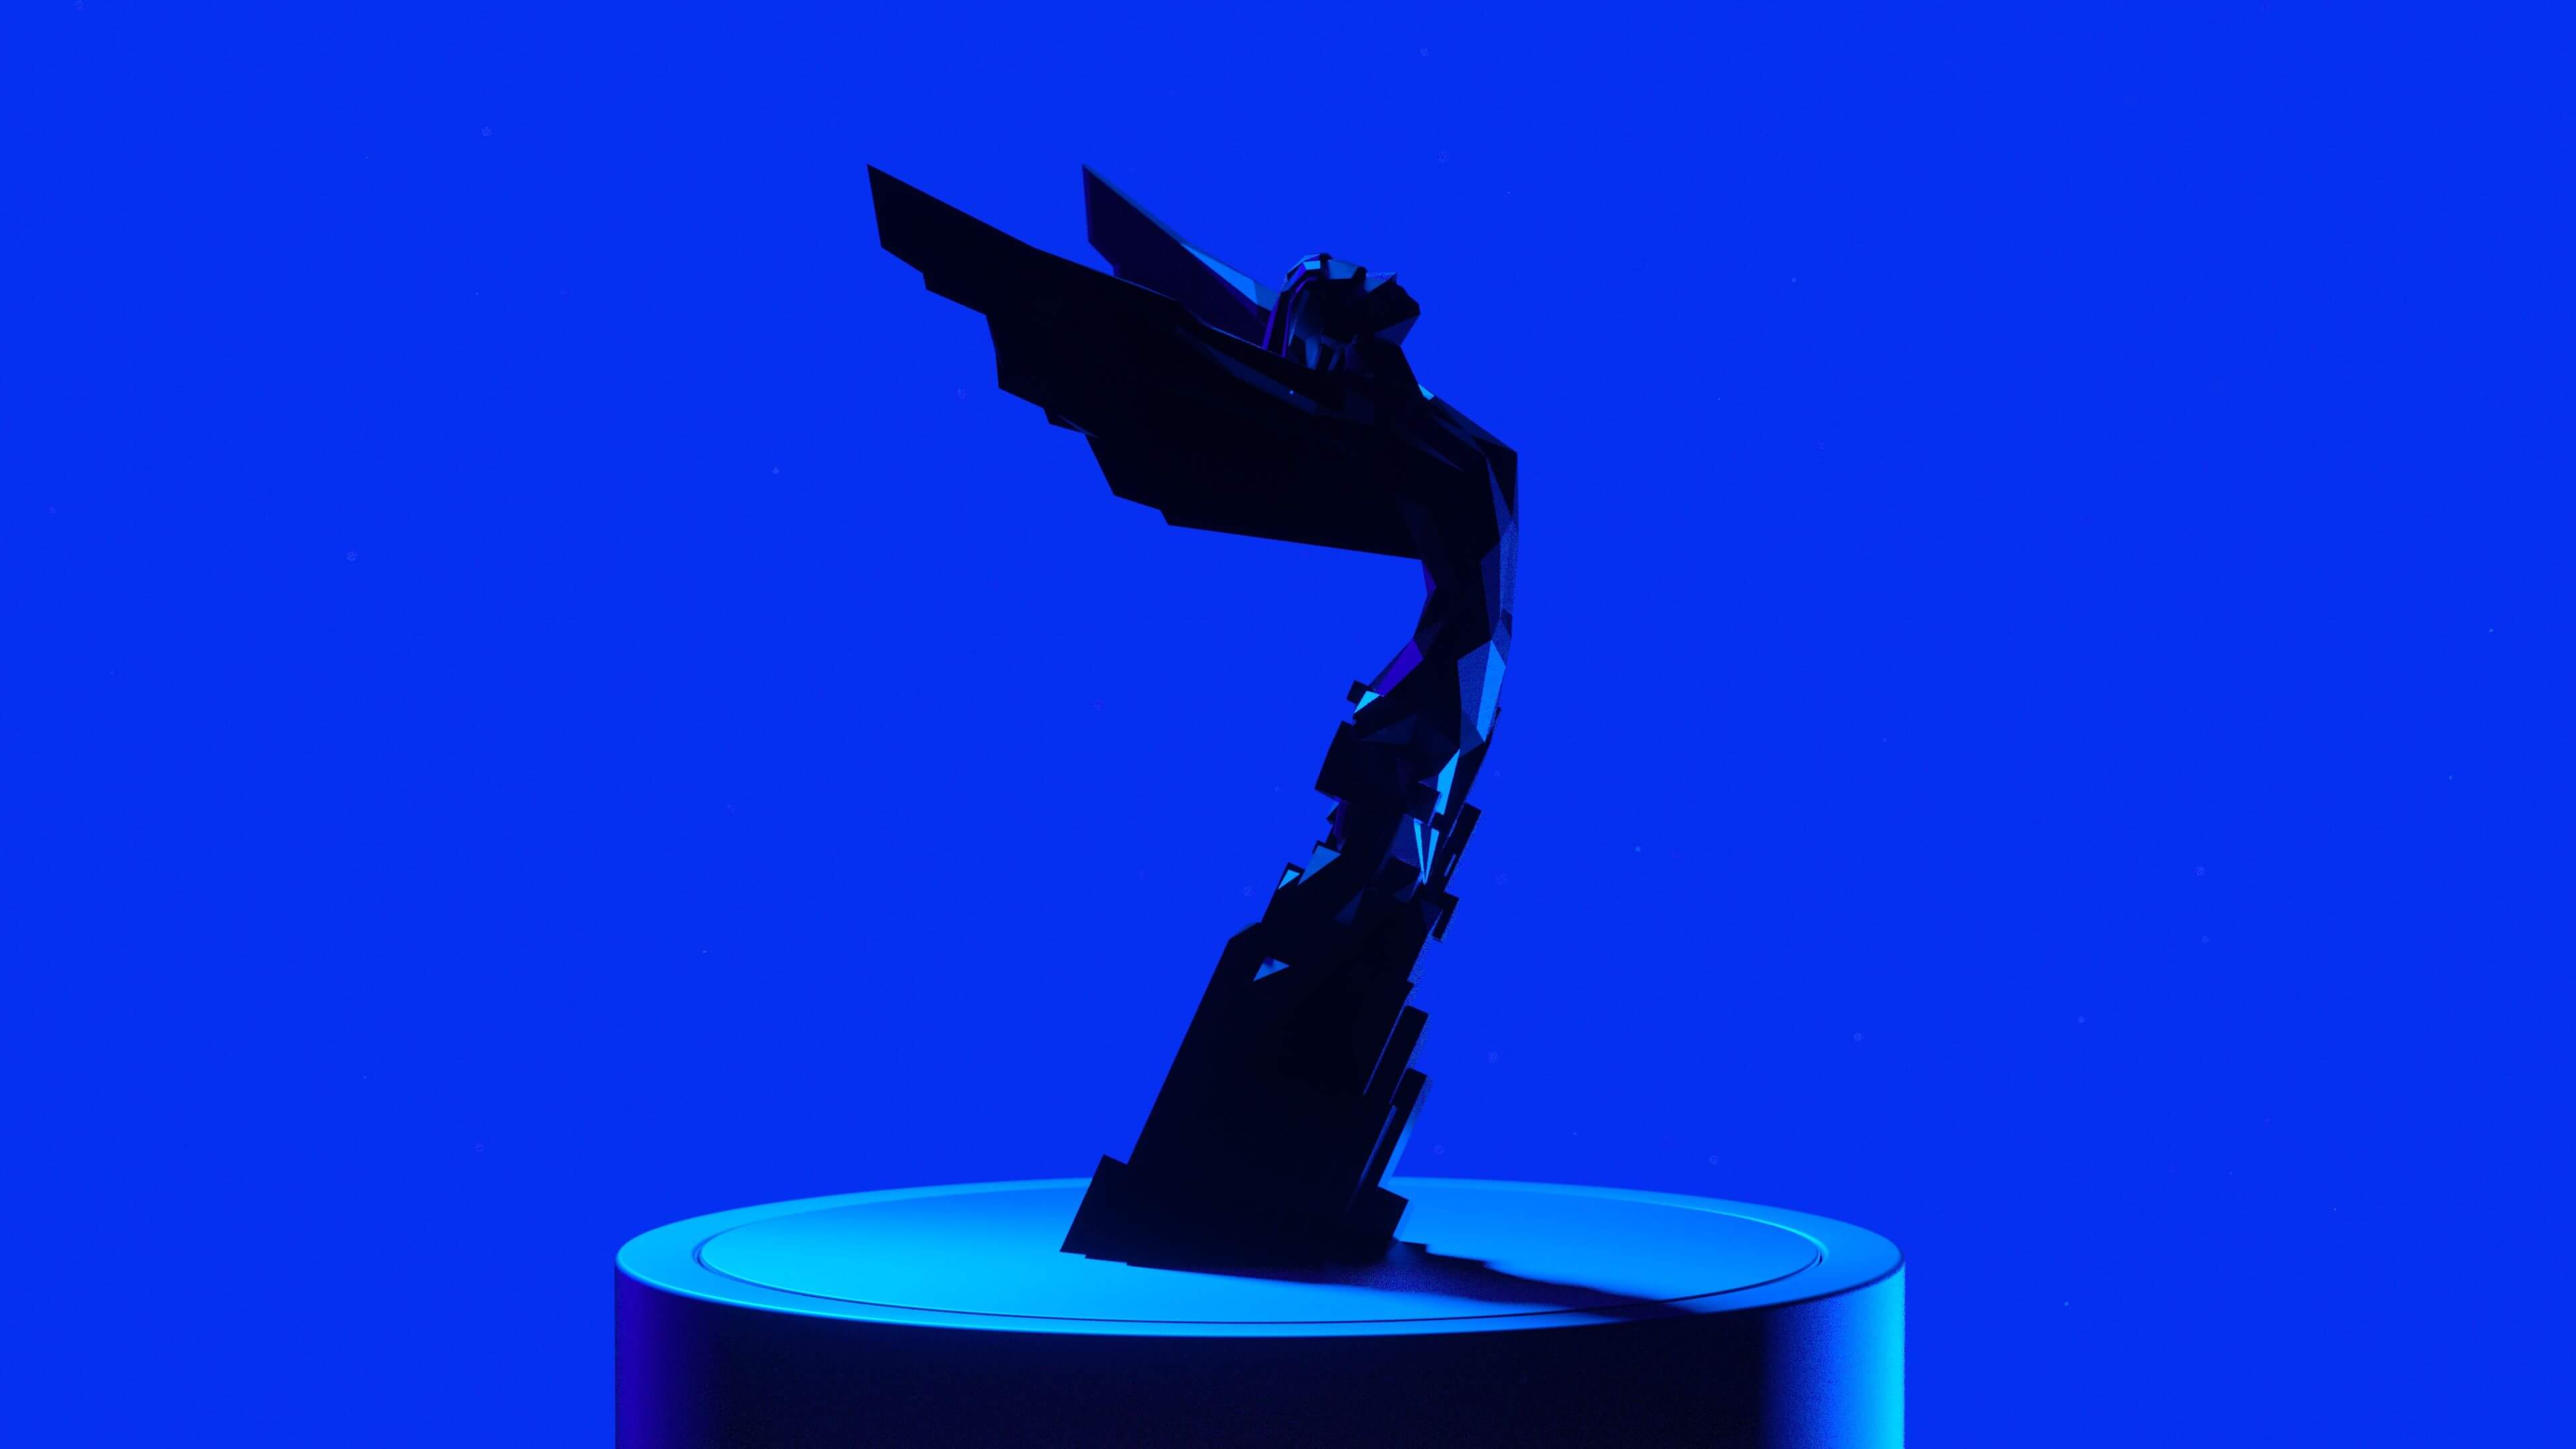 The Game Awards 2022: os vencedores, as novidades, os jogos - Epic Games  Store